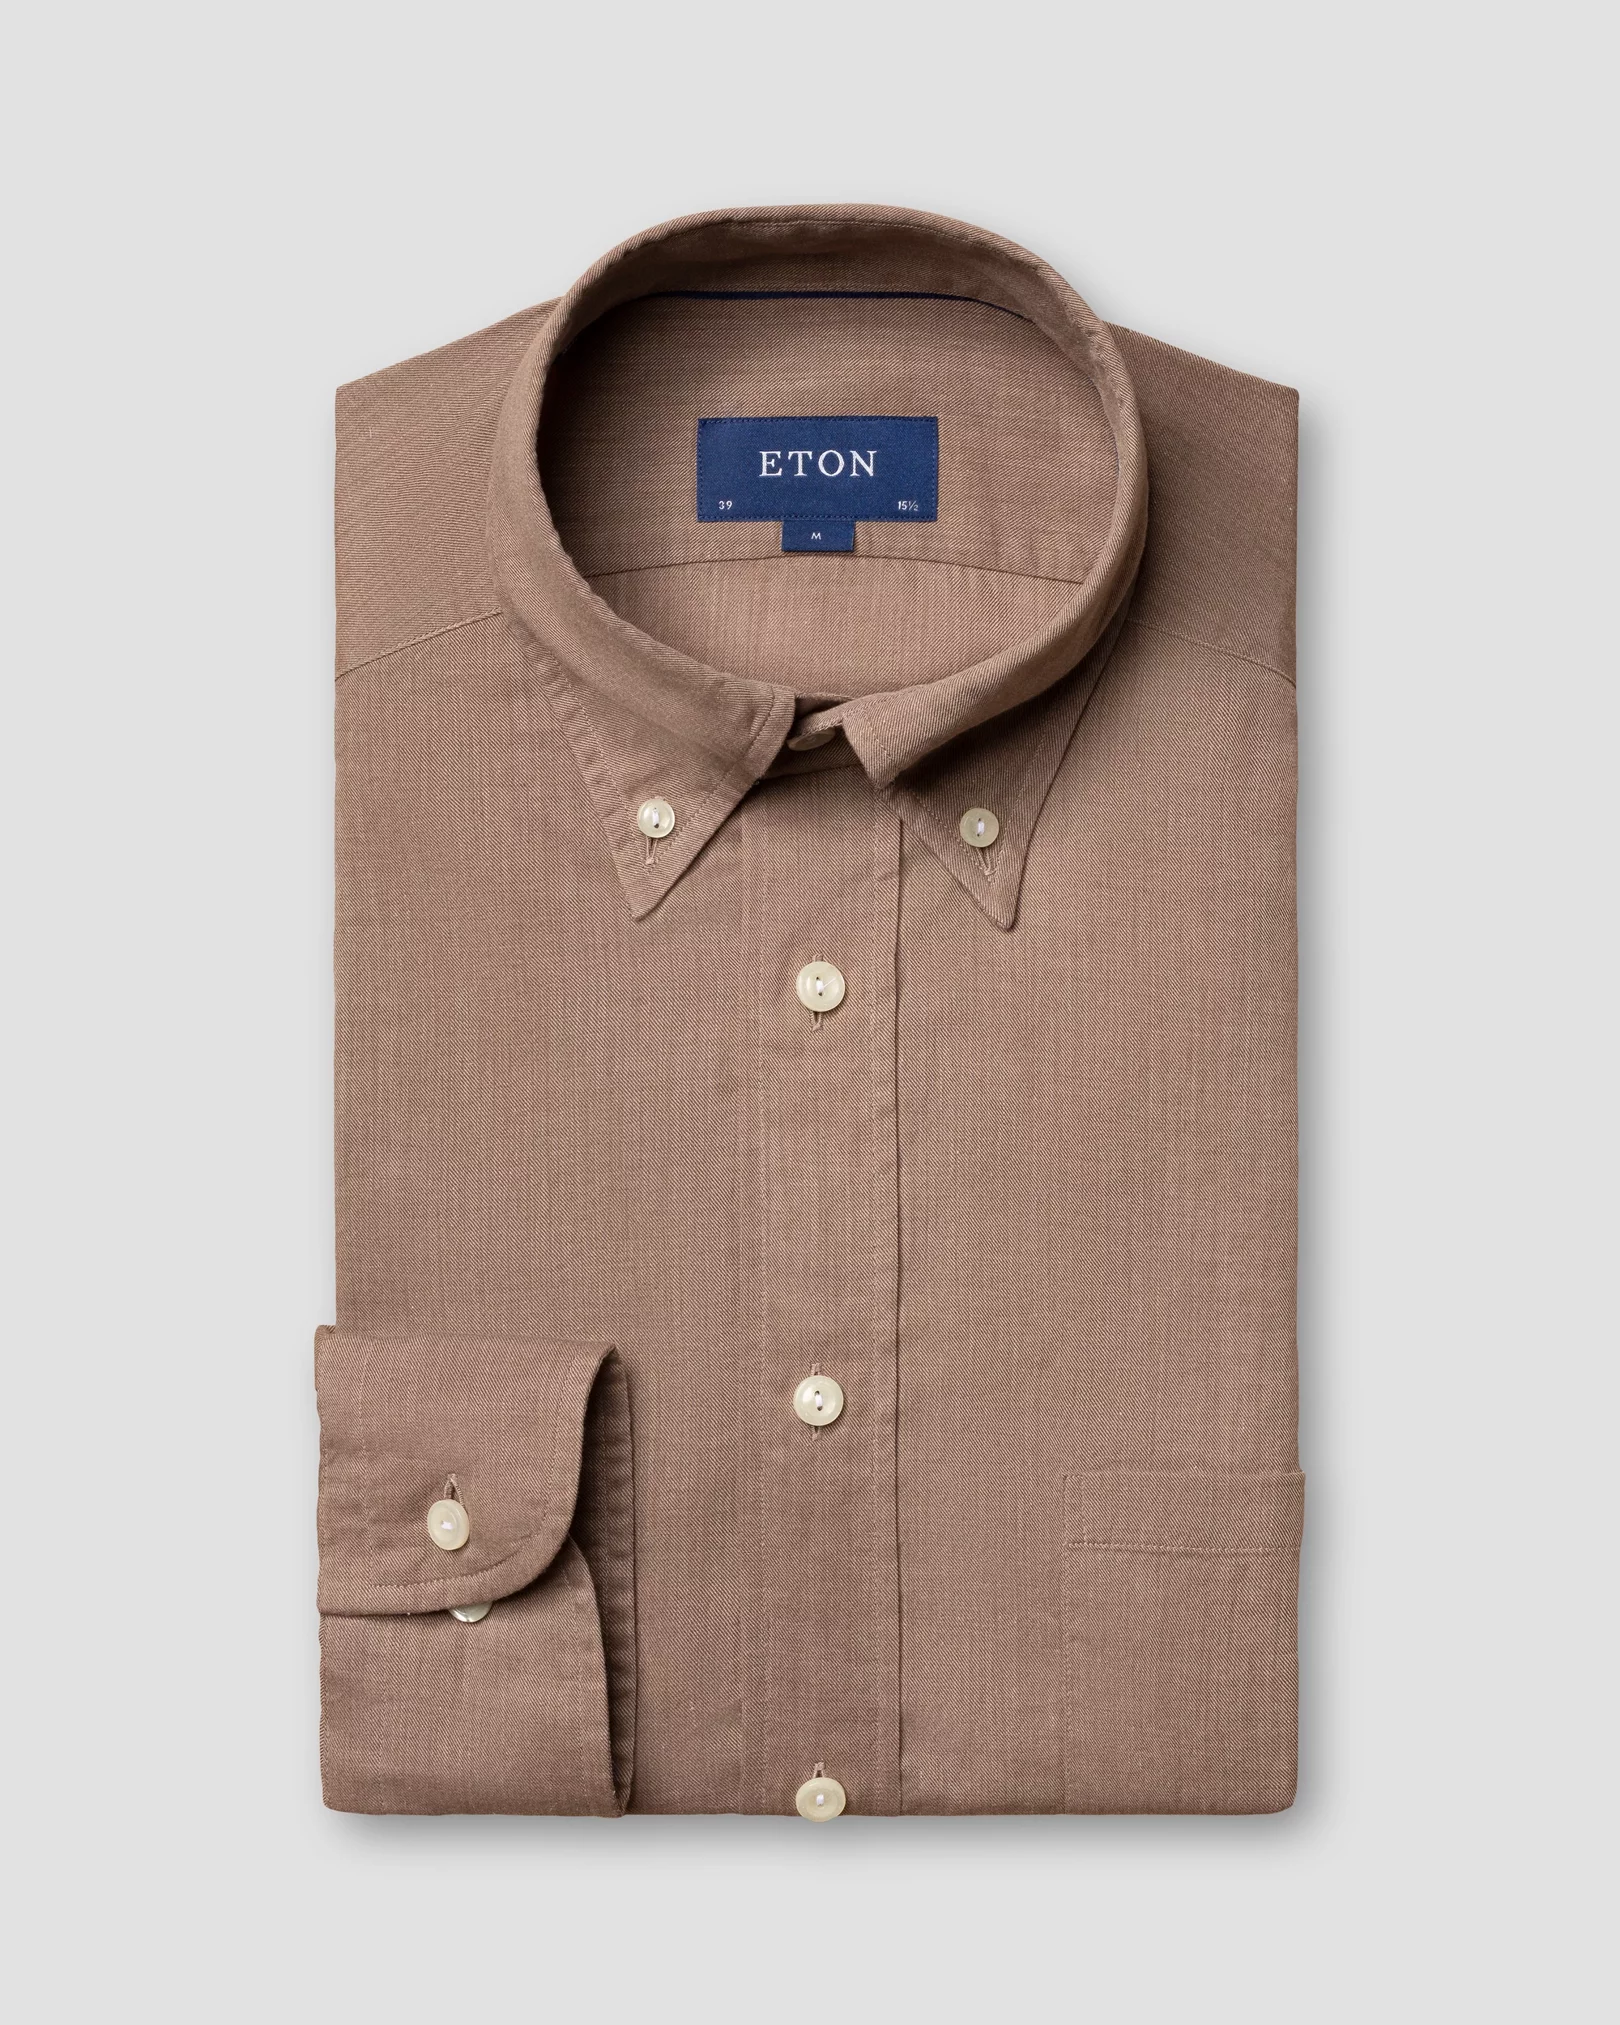 Eton - brown flannel shirt